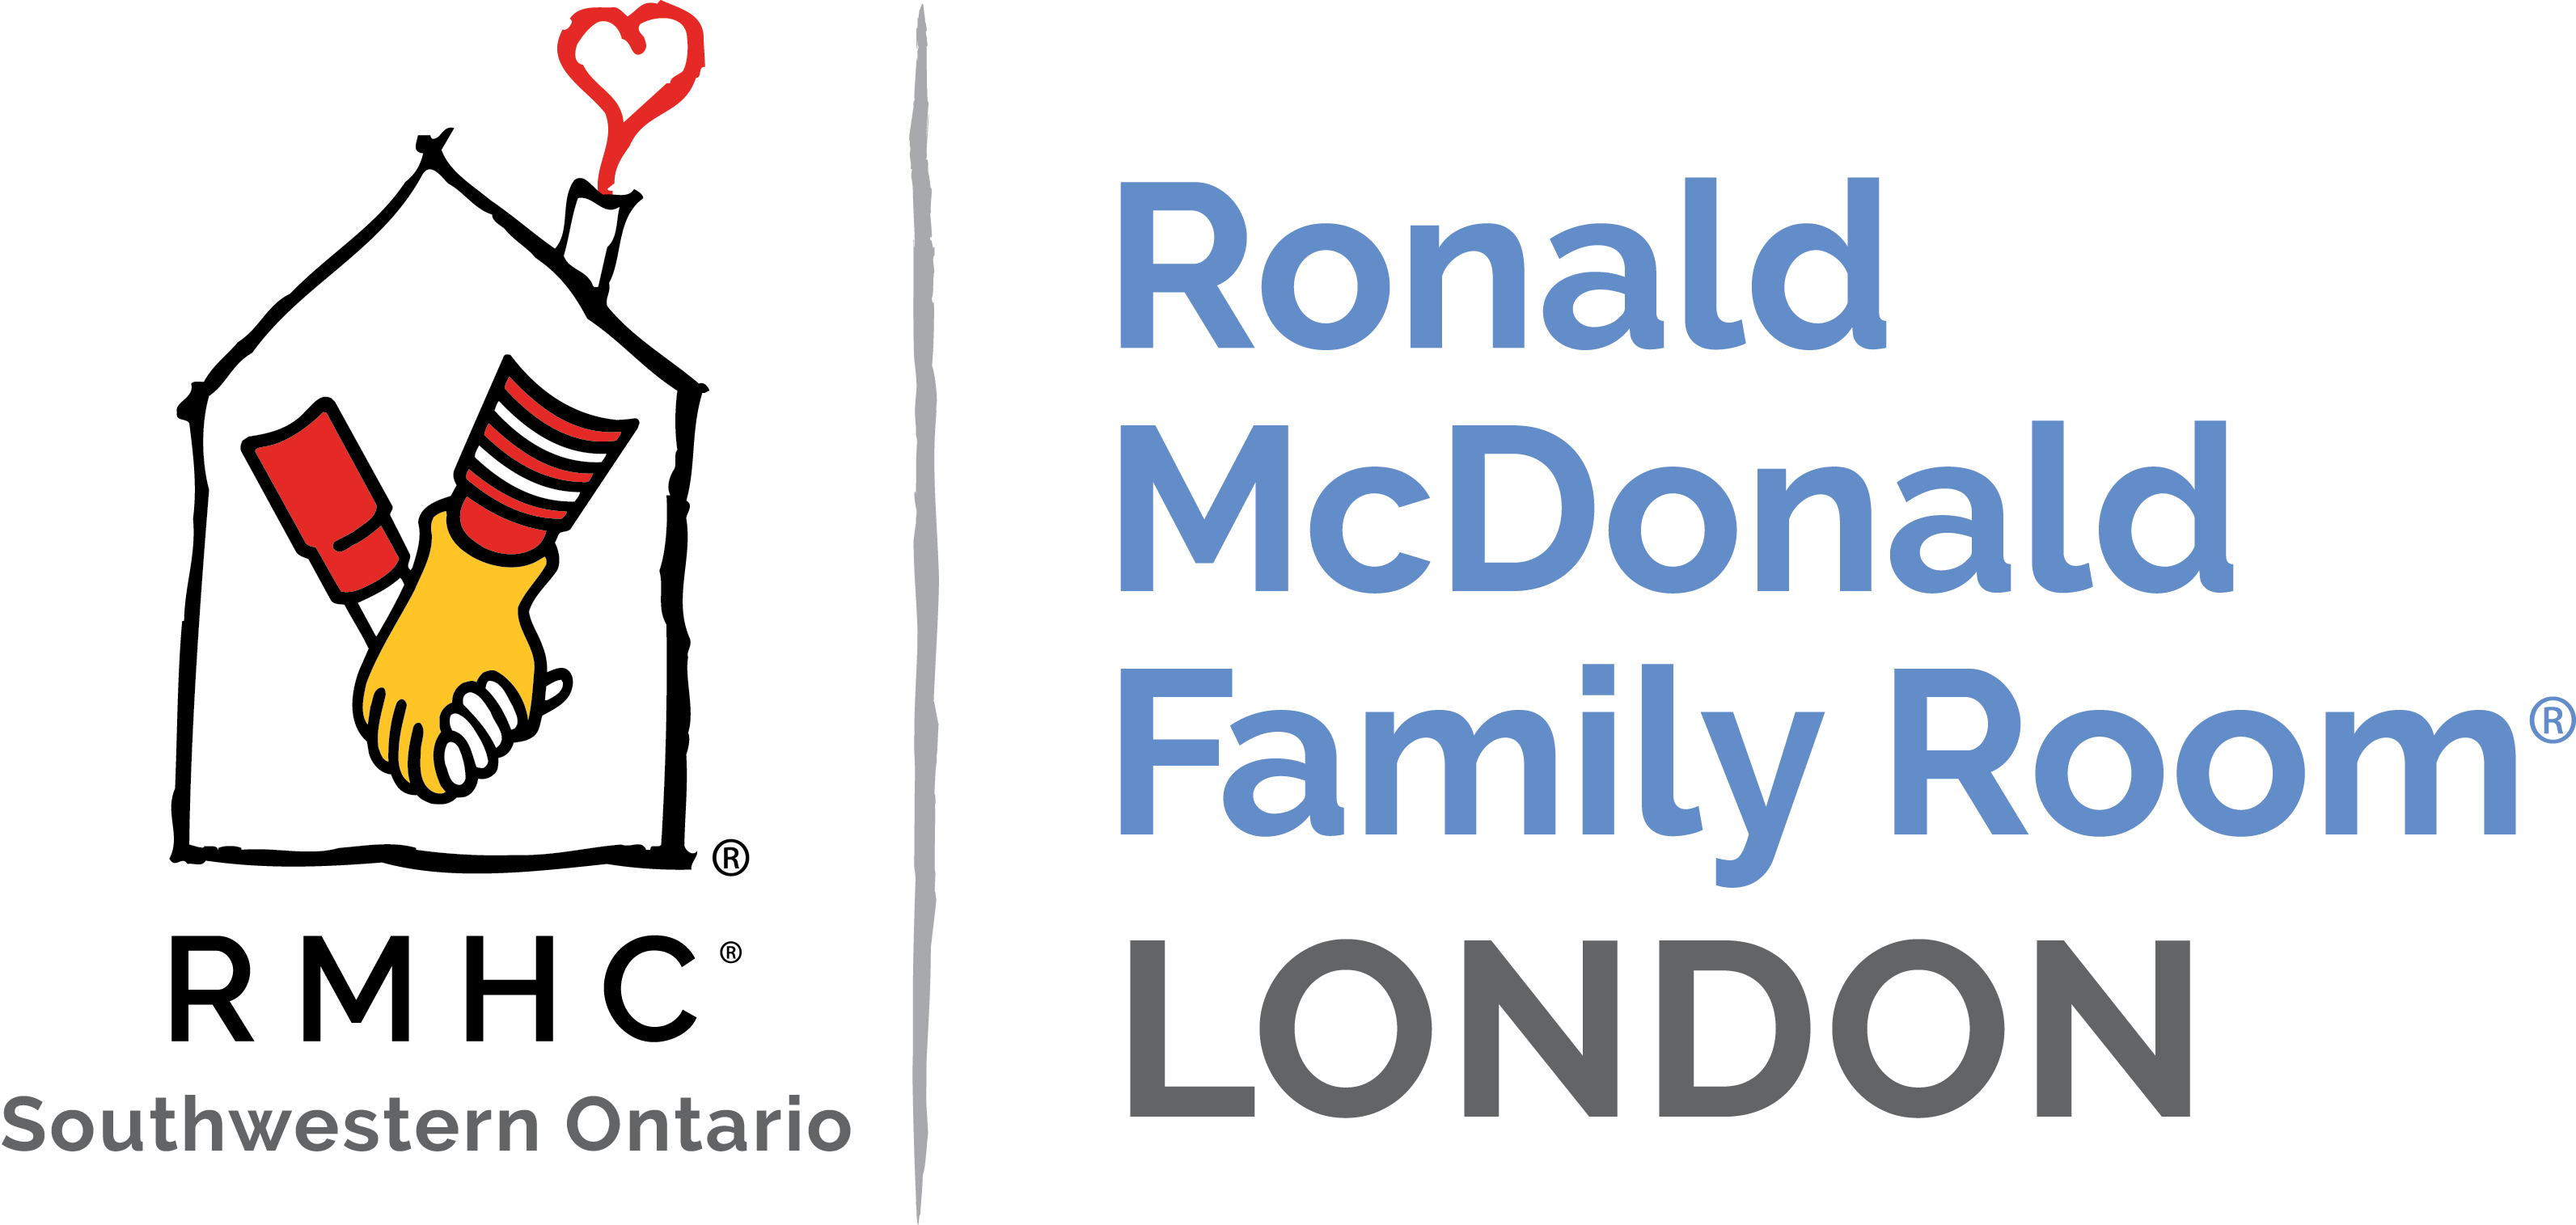 Ronald McDonald Family Room London